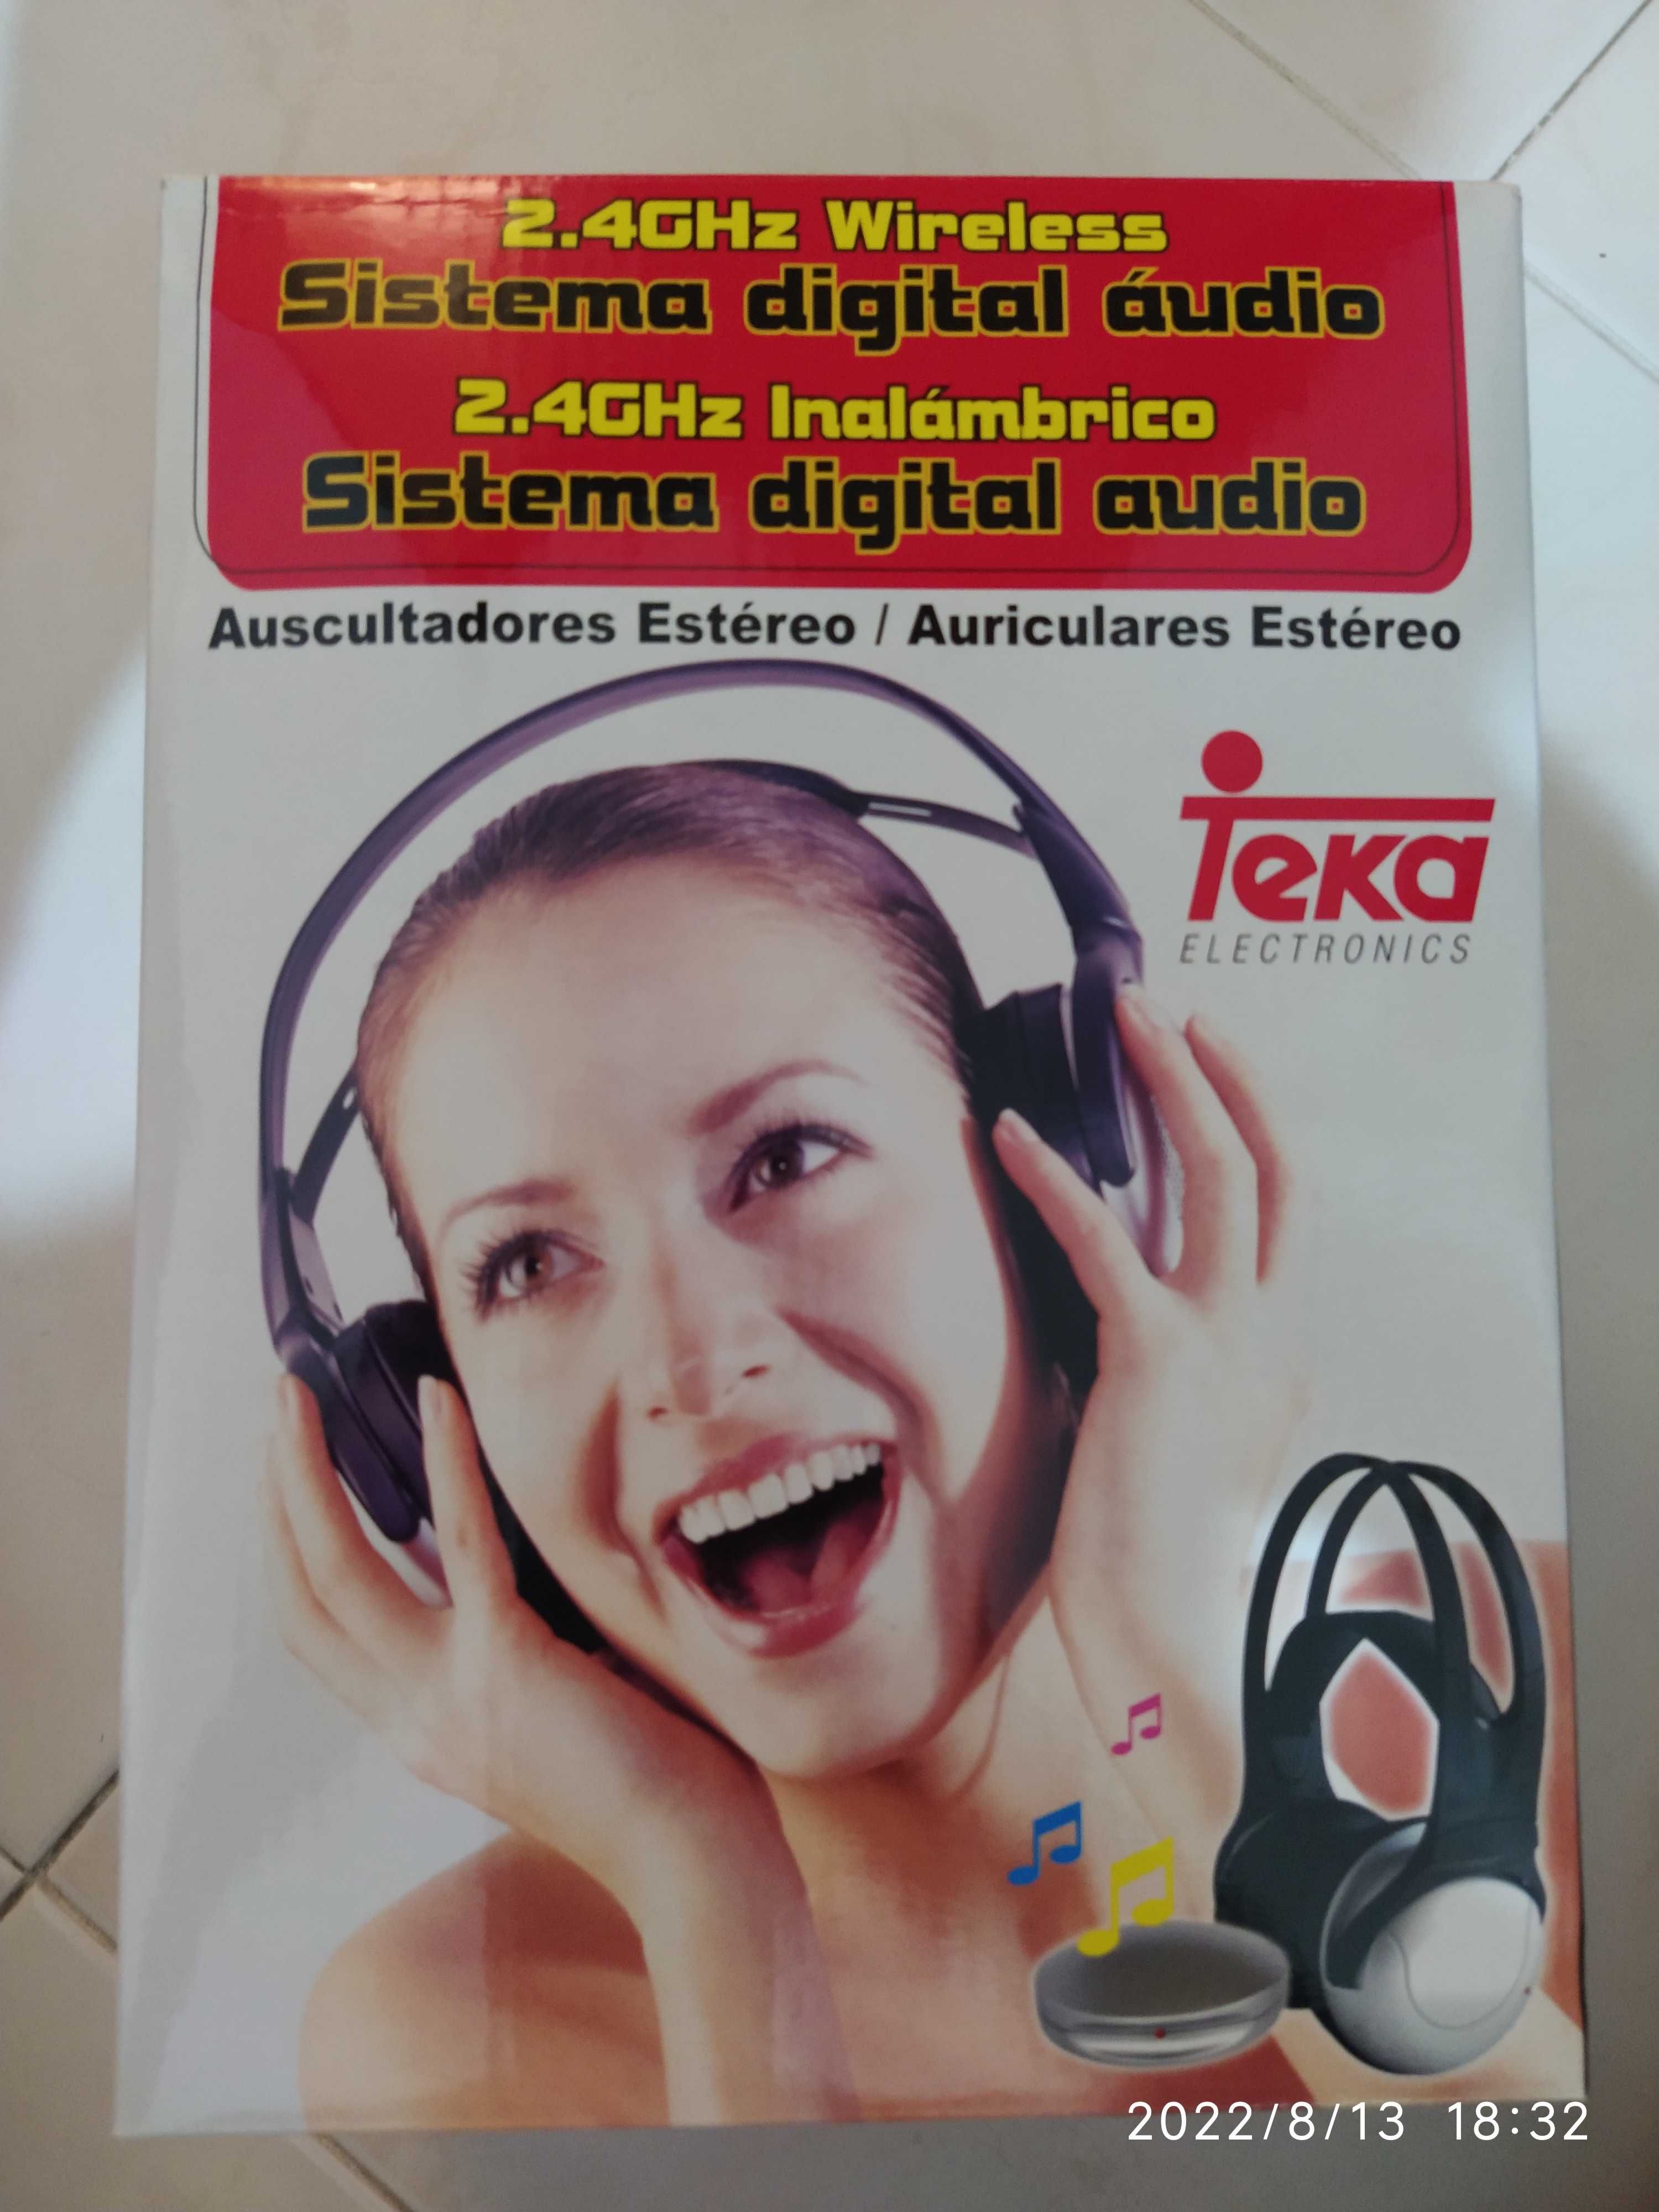 Auscultadores / Auriculares Estéreo da TEKA 2.4GHz Wireless